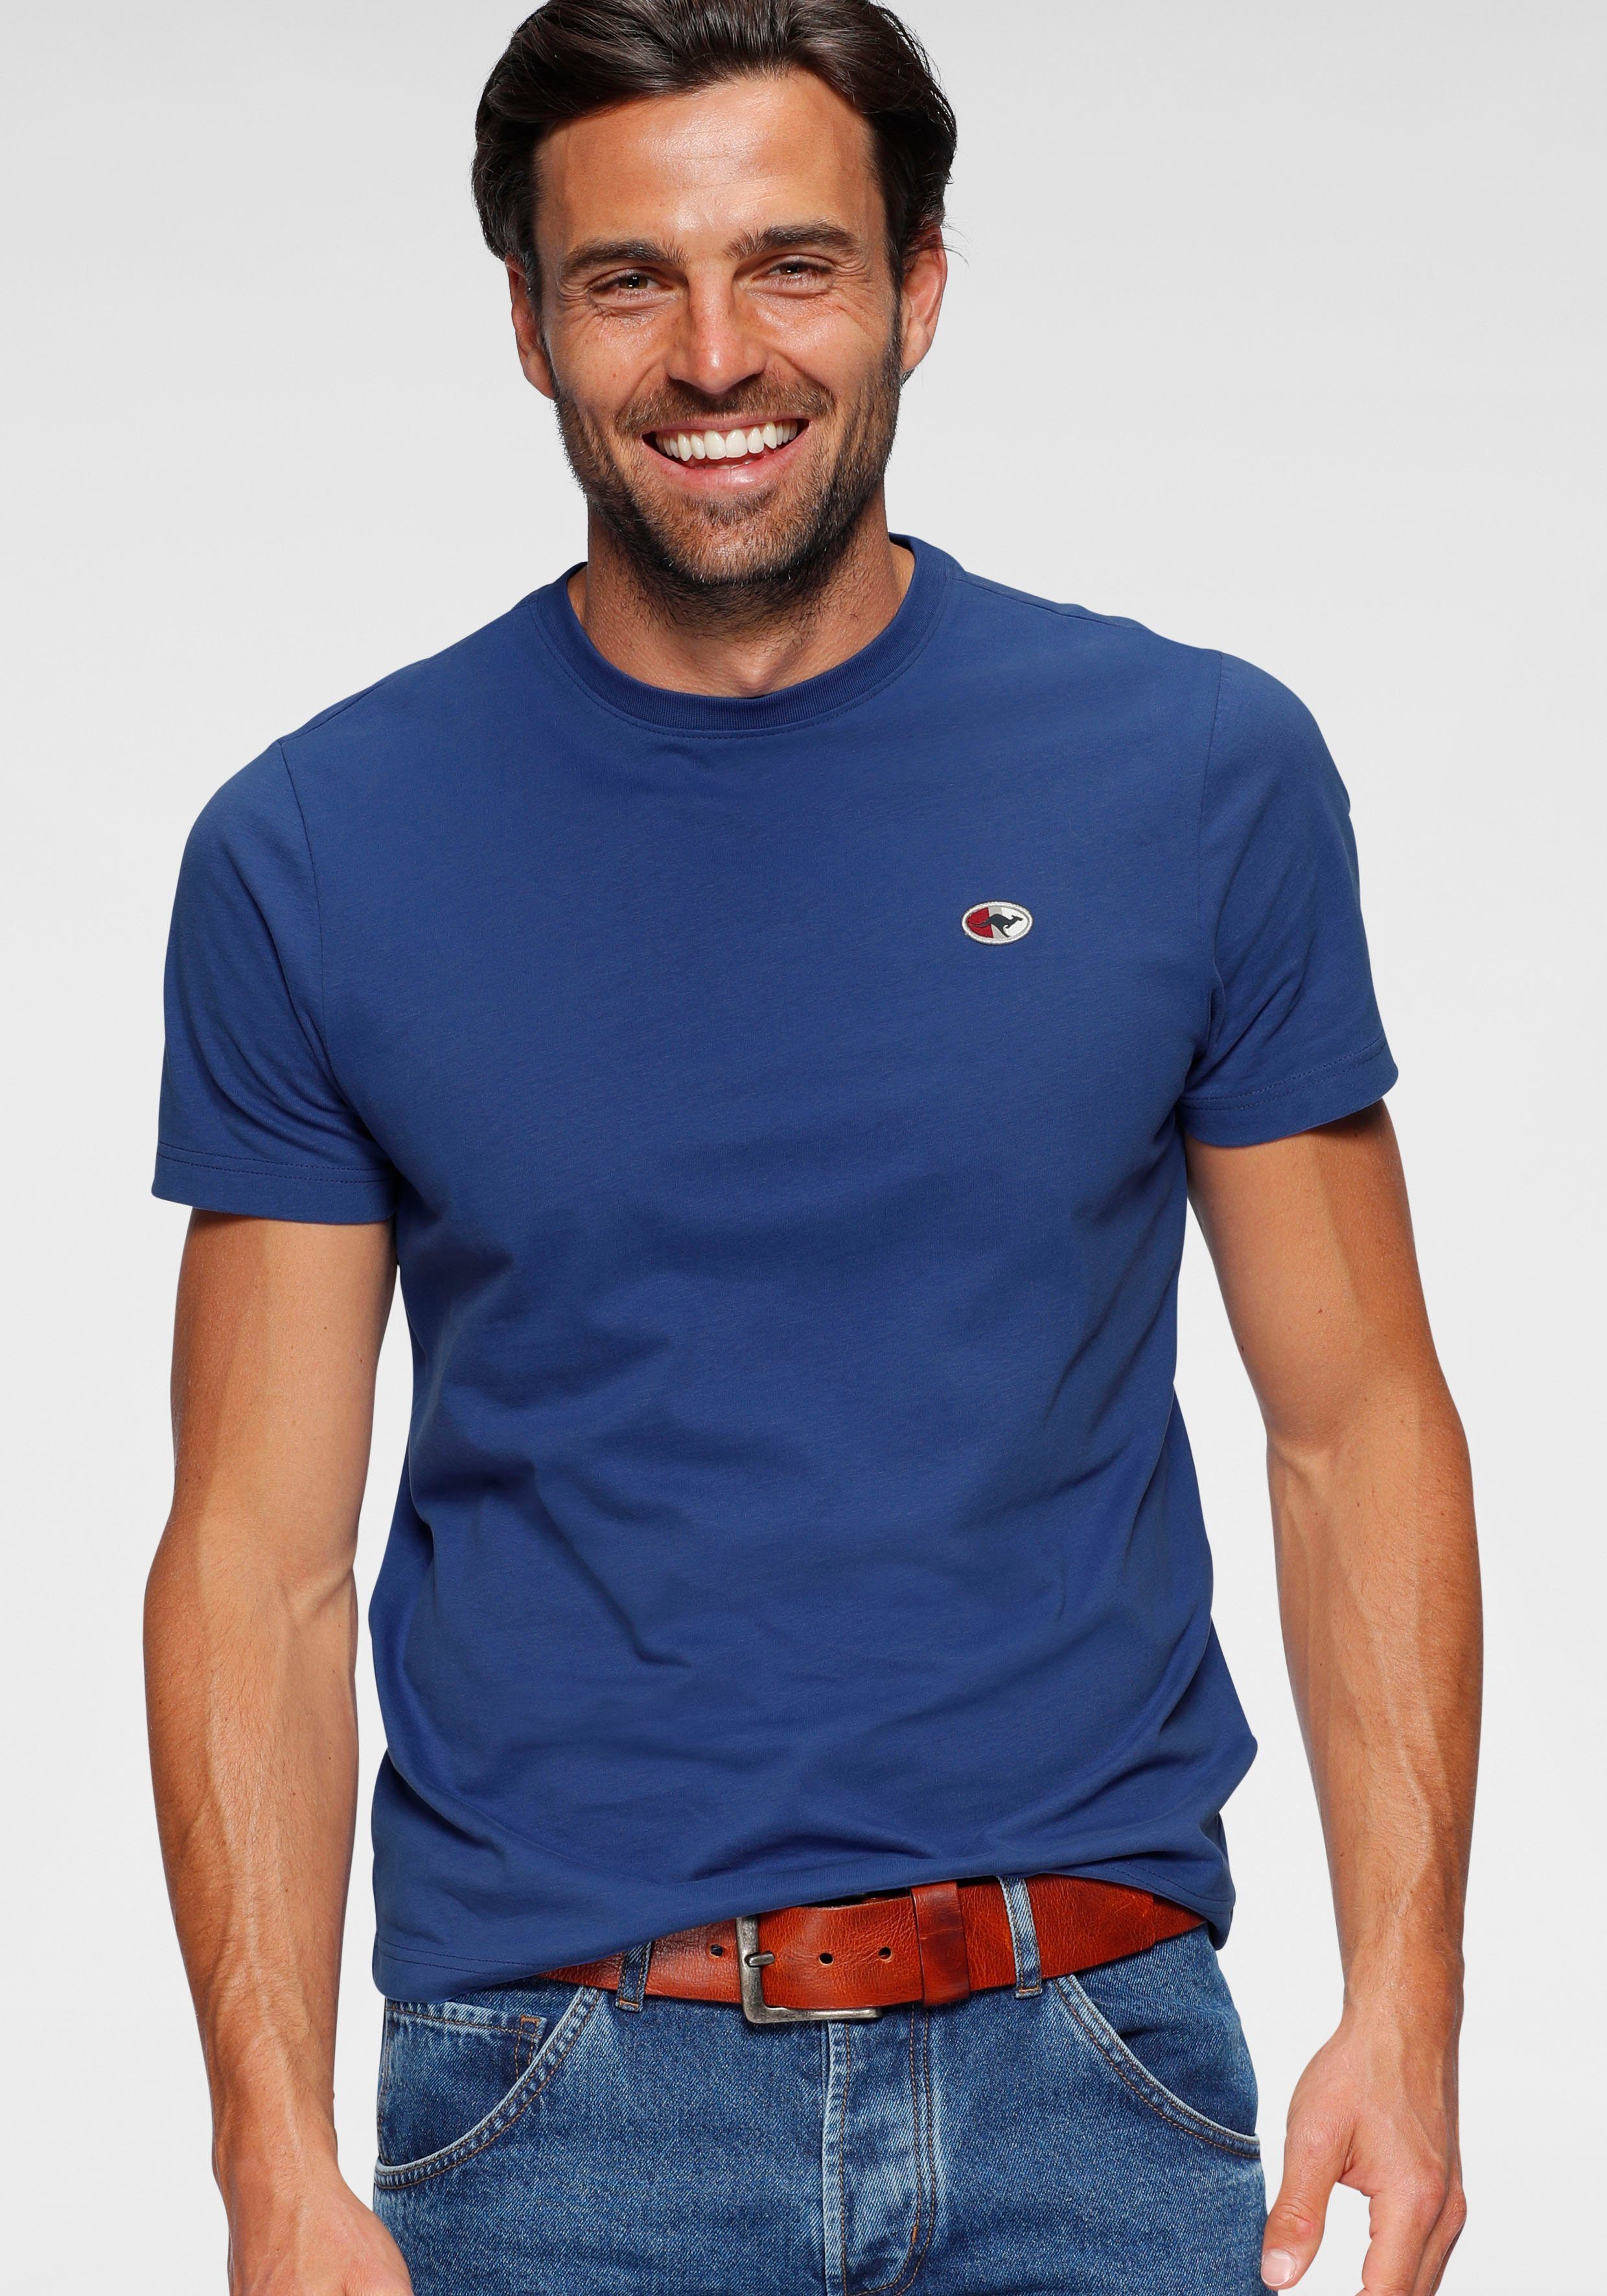 KangaROOS T-Shirt unifarben royalblau | T-Shirts